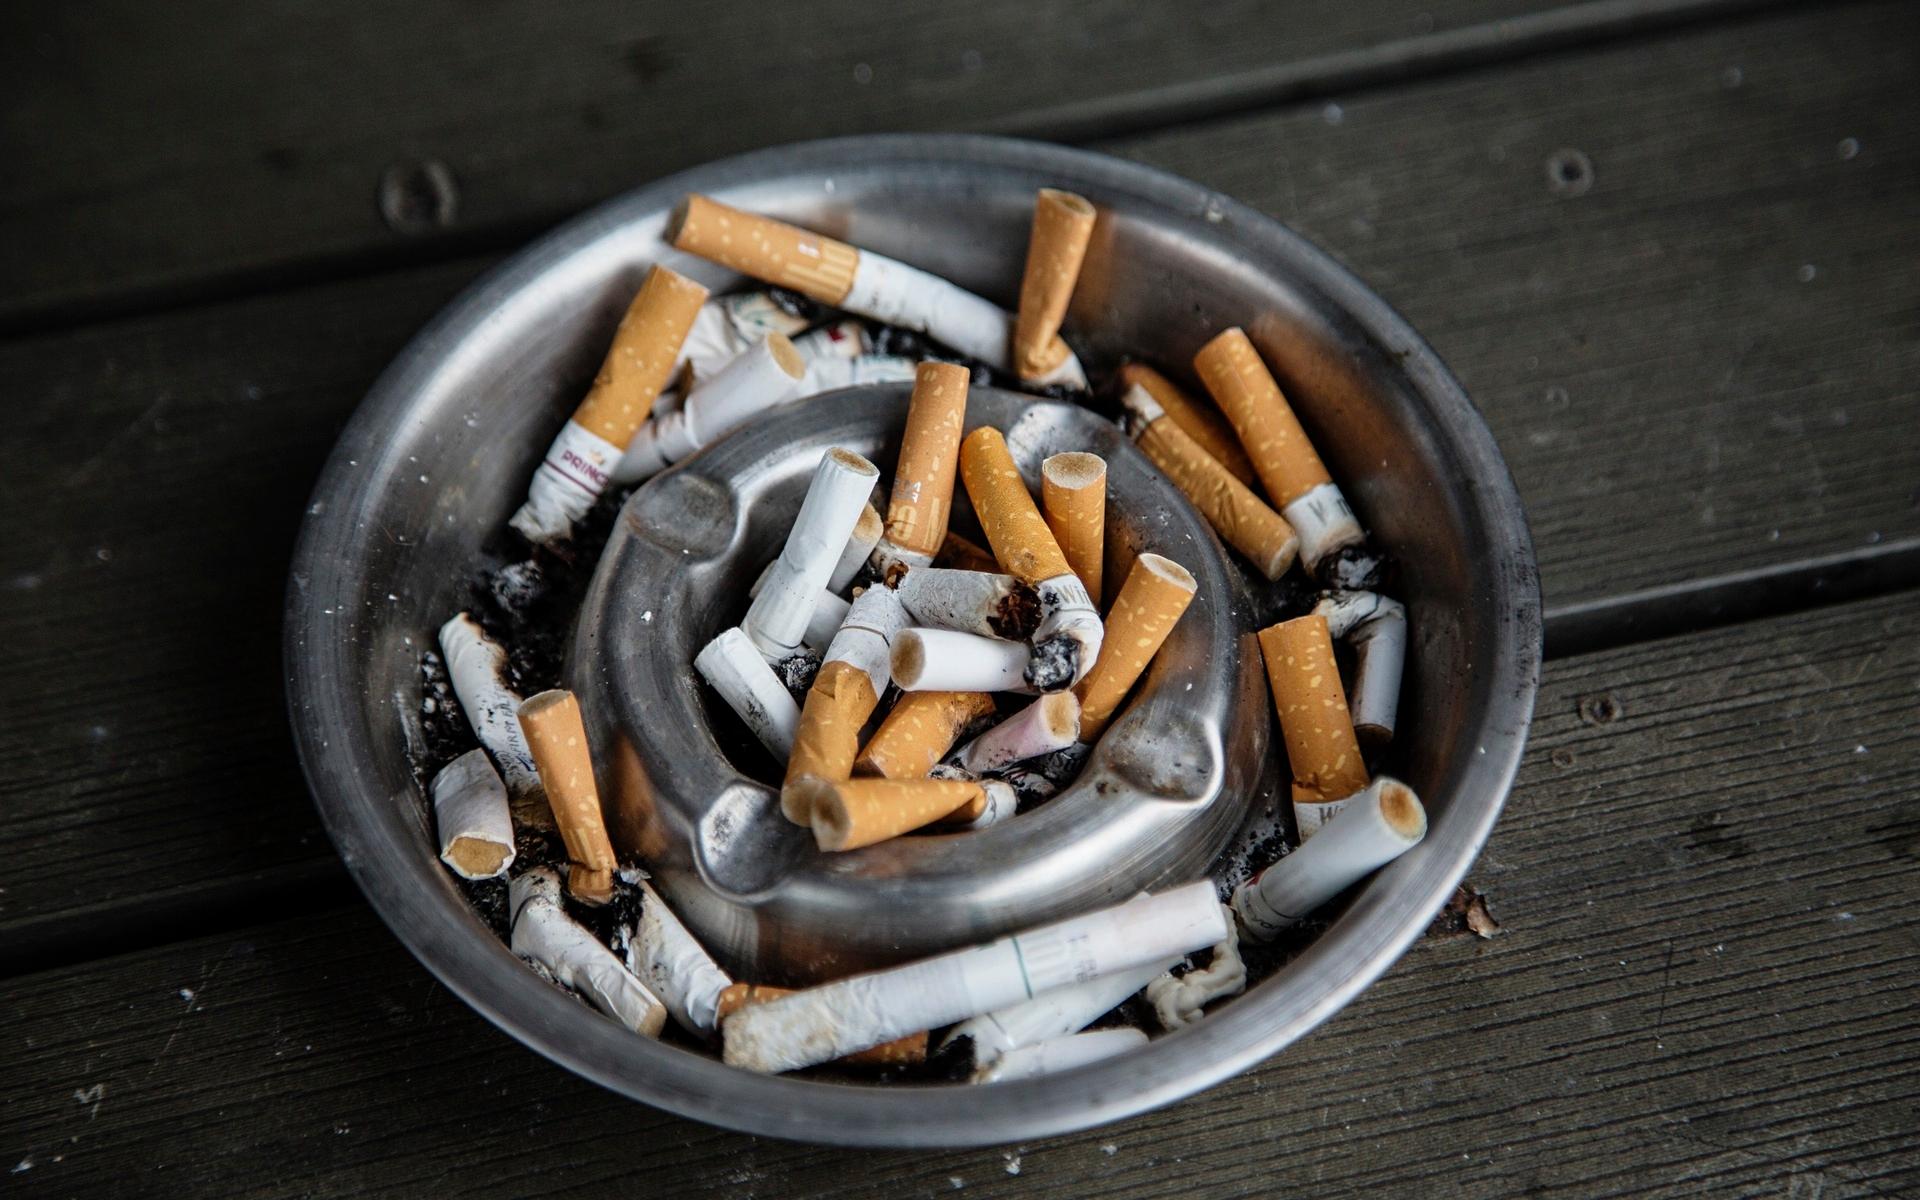 ”Philip Morris har i åratal hävdat att de vill se ett slut på rökningen, men hur kan sådana påståenden från ett bolag som säljer mer än en tiondel av alla cigarretter som röks i världen tas seriöst?”, säger organisationen Action on Smoking i ett uttalande.